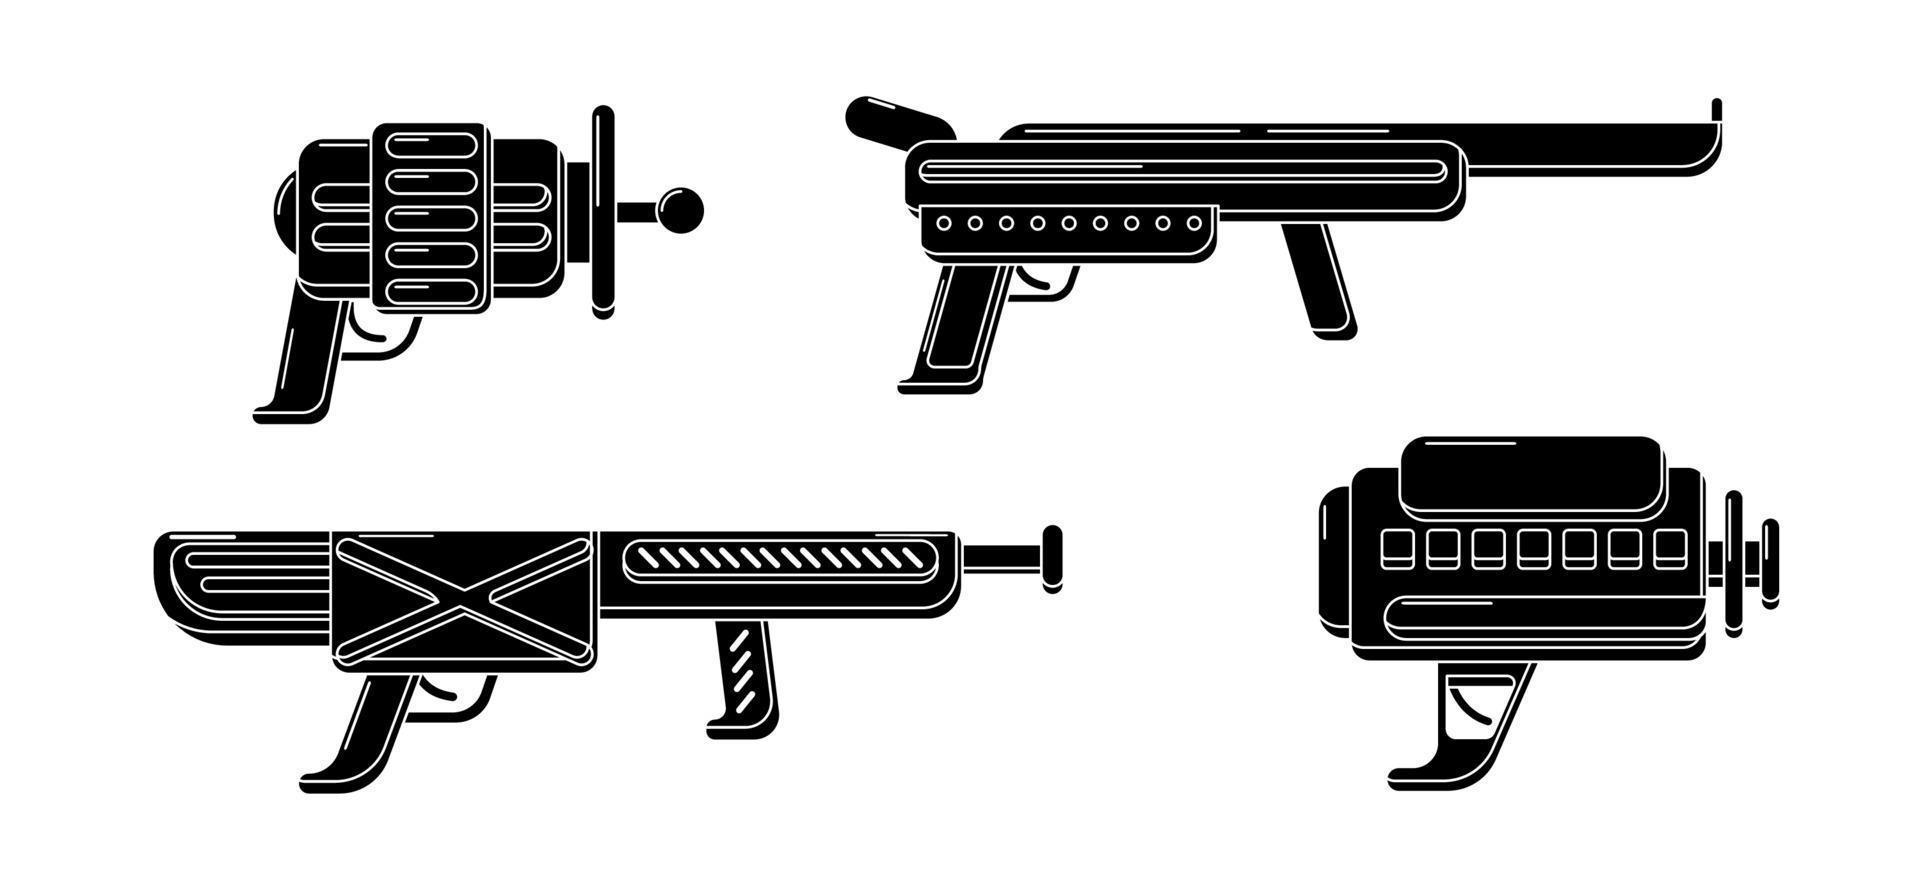 colección de blasters de glifos vectoriales. pistola de juguete juego de sellos de goma. diseño de armas futuristas en color negro vector